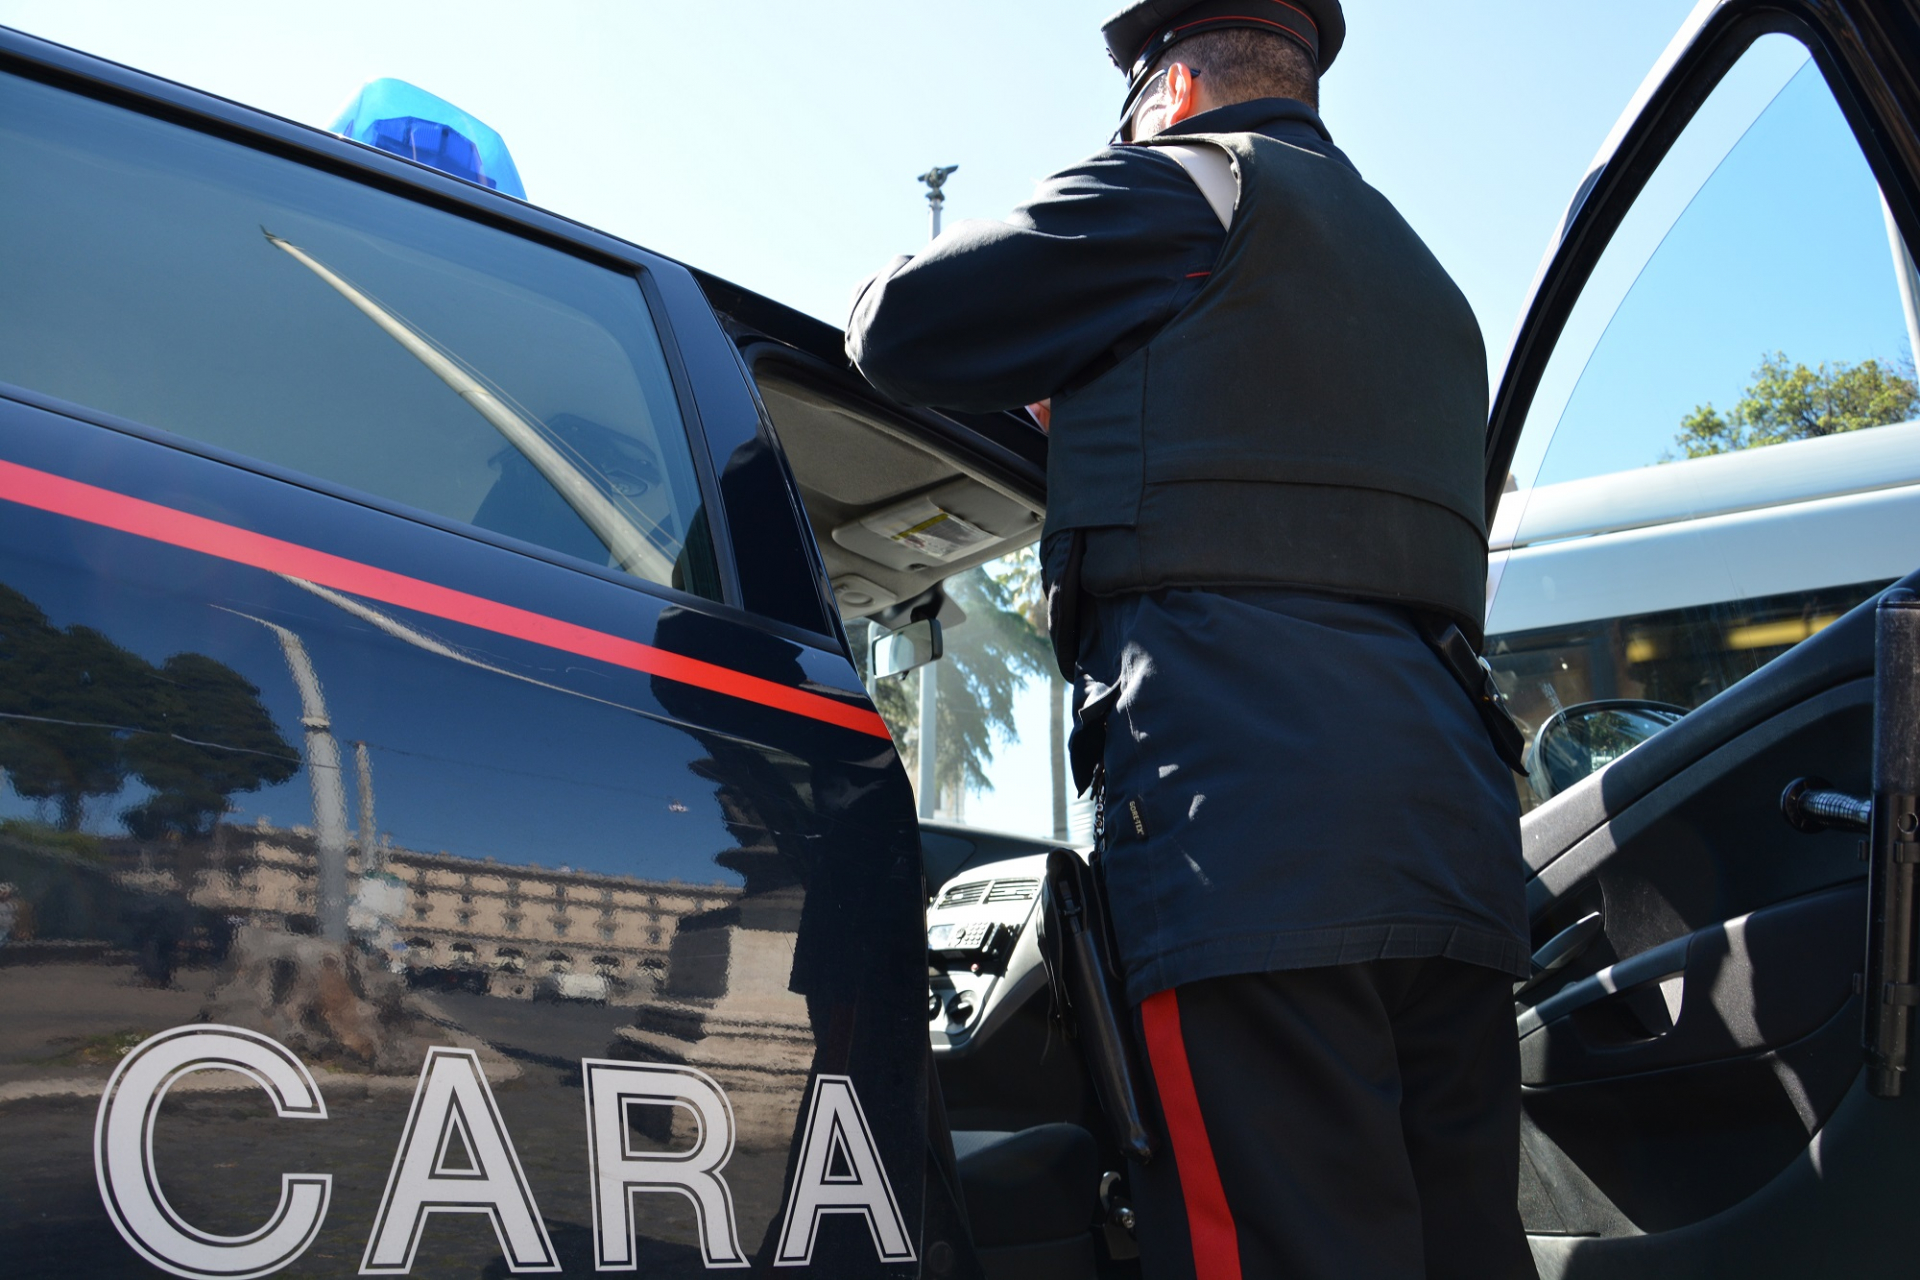 Riparava auto senza autorizzazioni, denunciato un 45enne a Pieve a Nievole